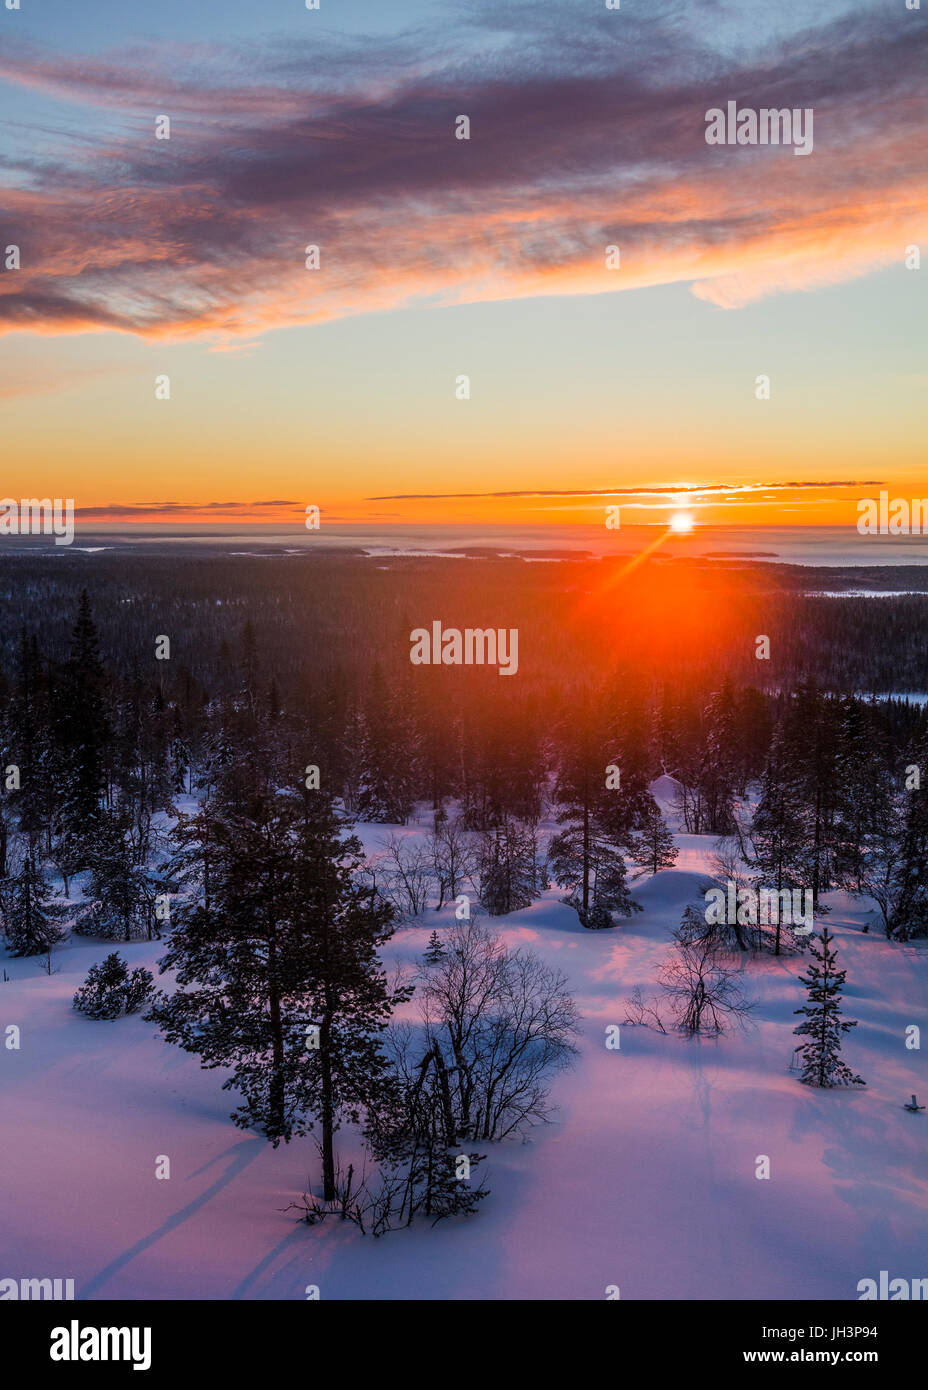 Winter sunrise in Finland Stock Photo